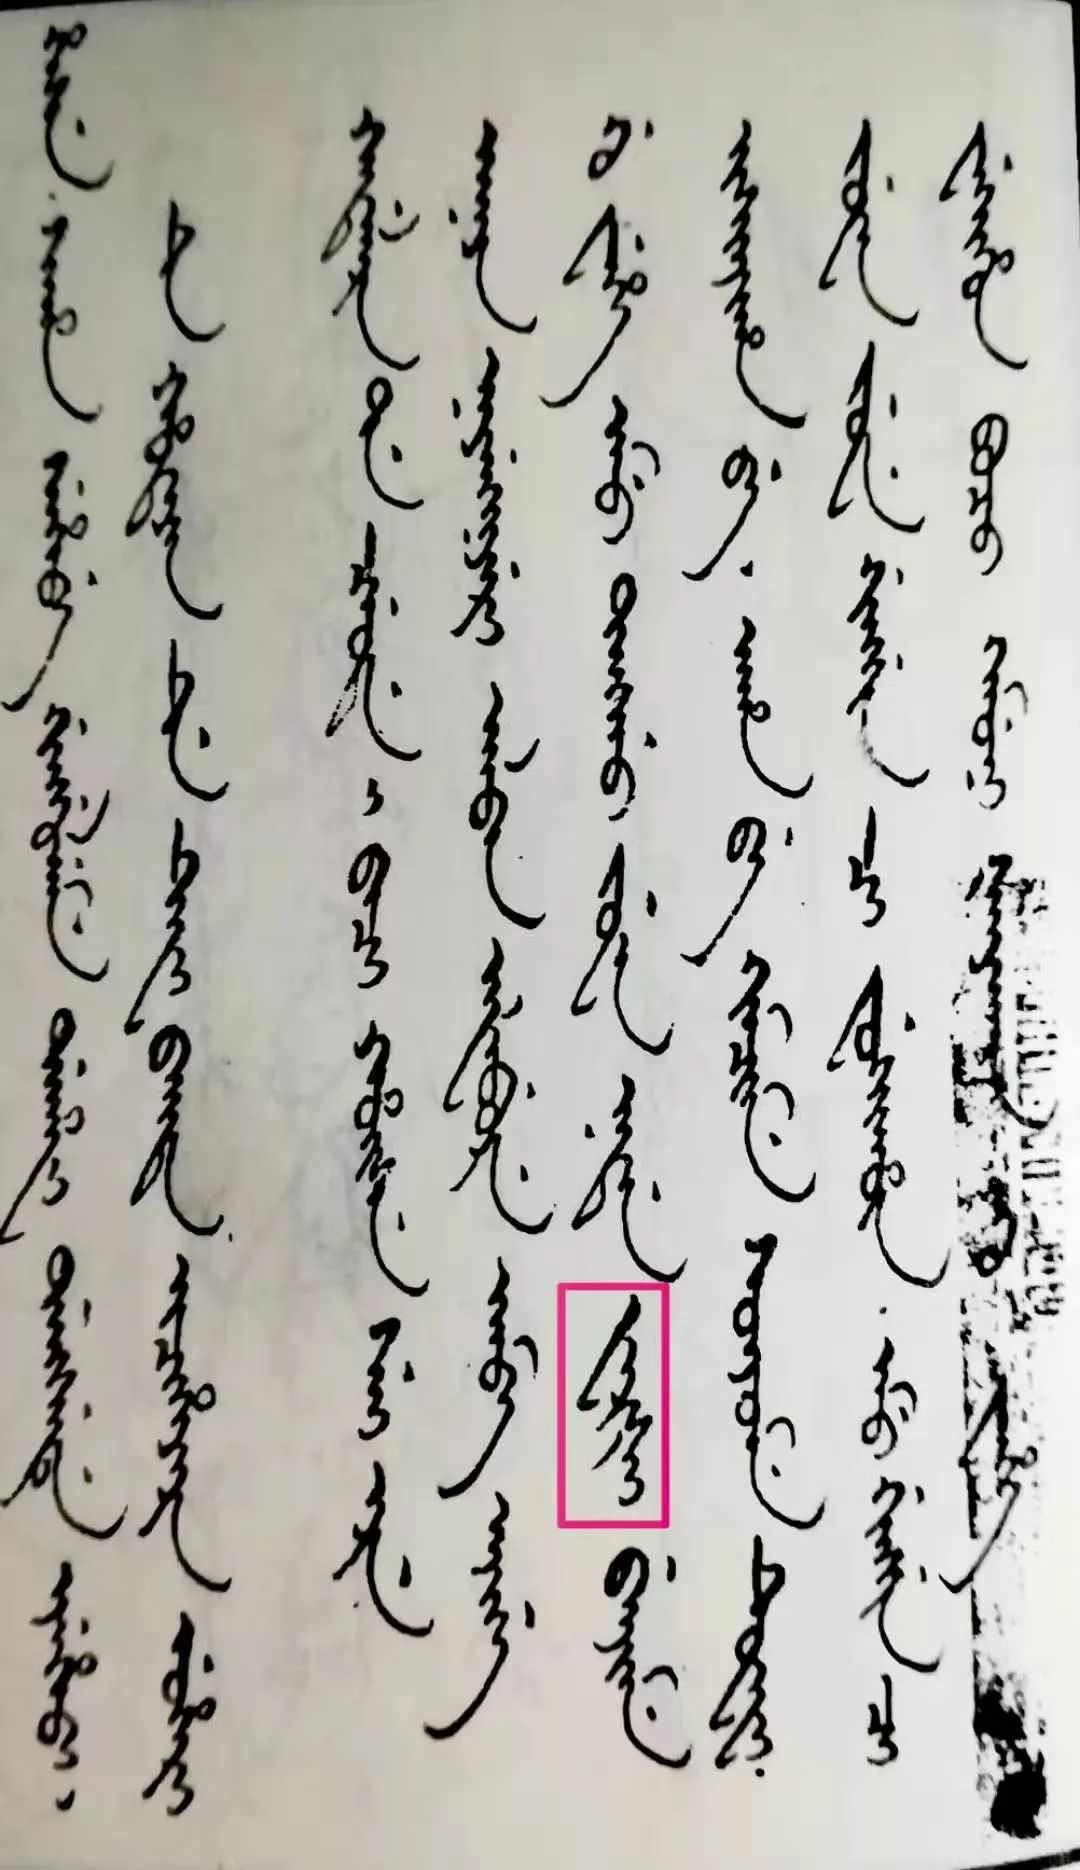 新疆文字与汉字对照表图片